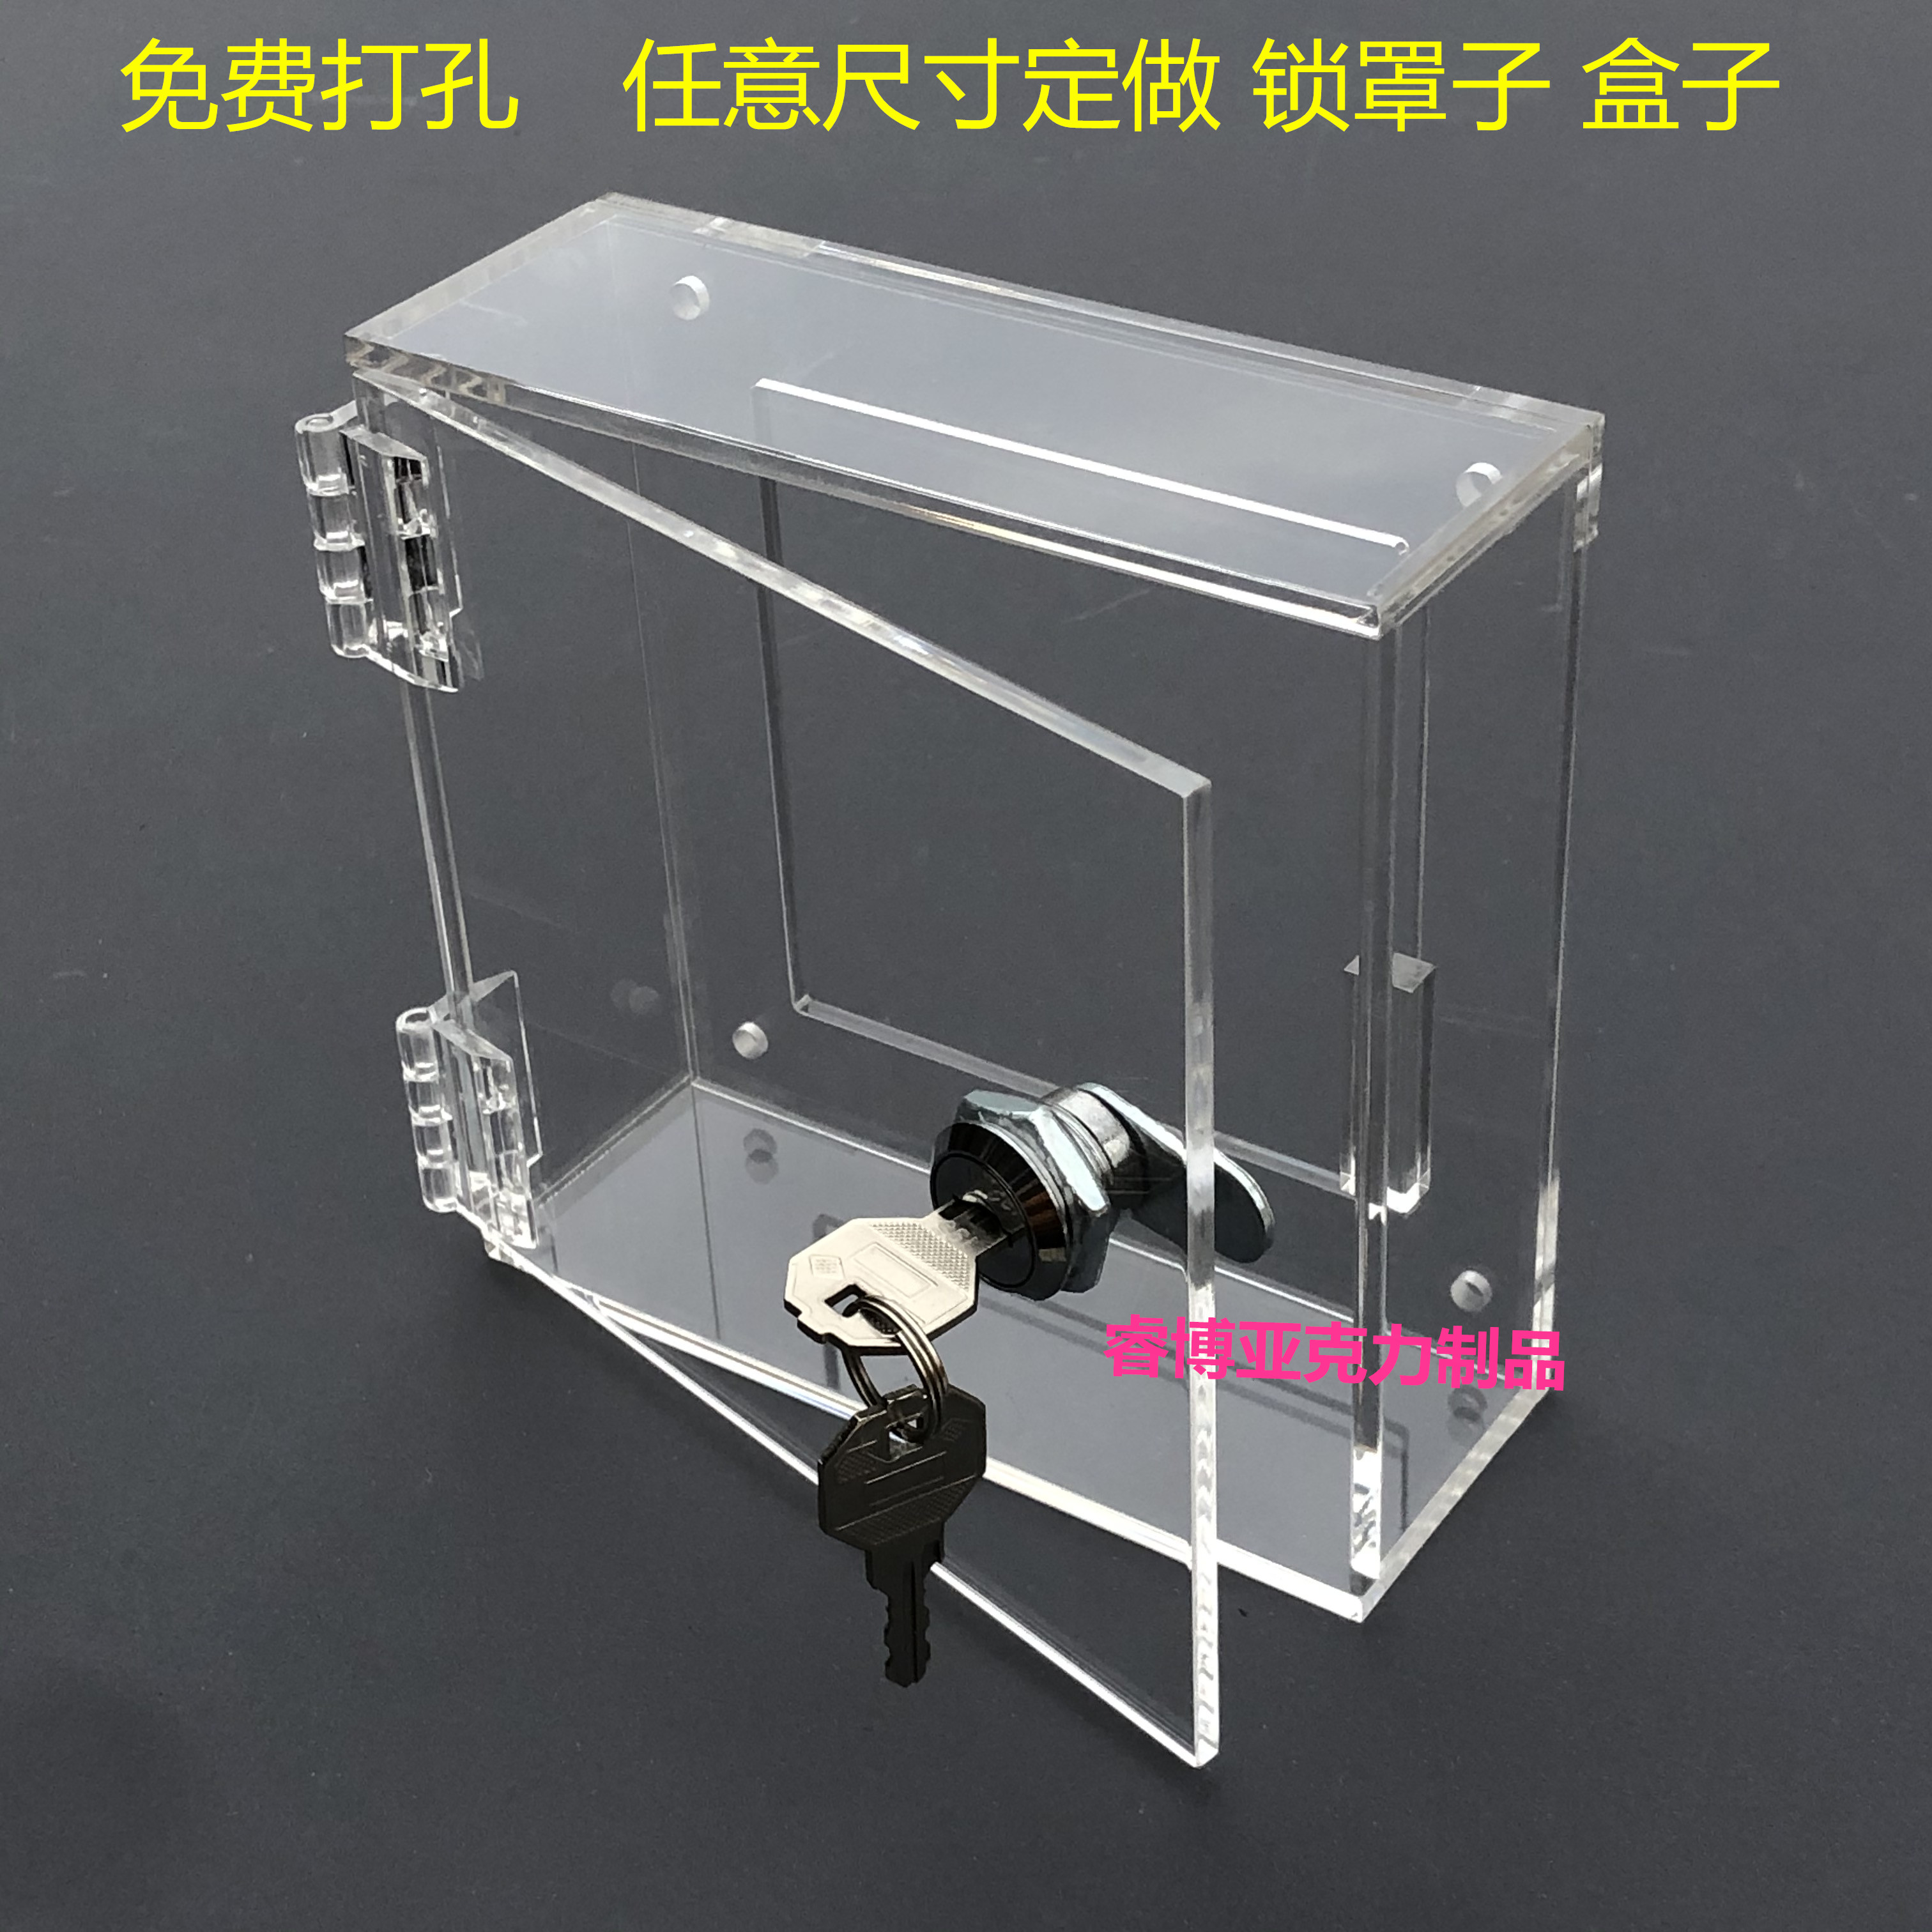 定制亚克力板透明防护罩带锁保护罩子展示盒子展示柜有机玻璃箱子